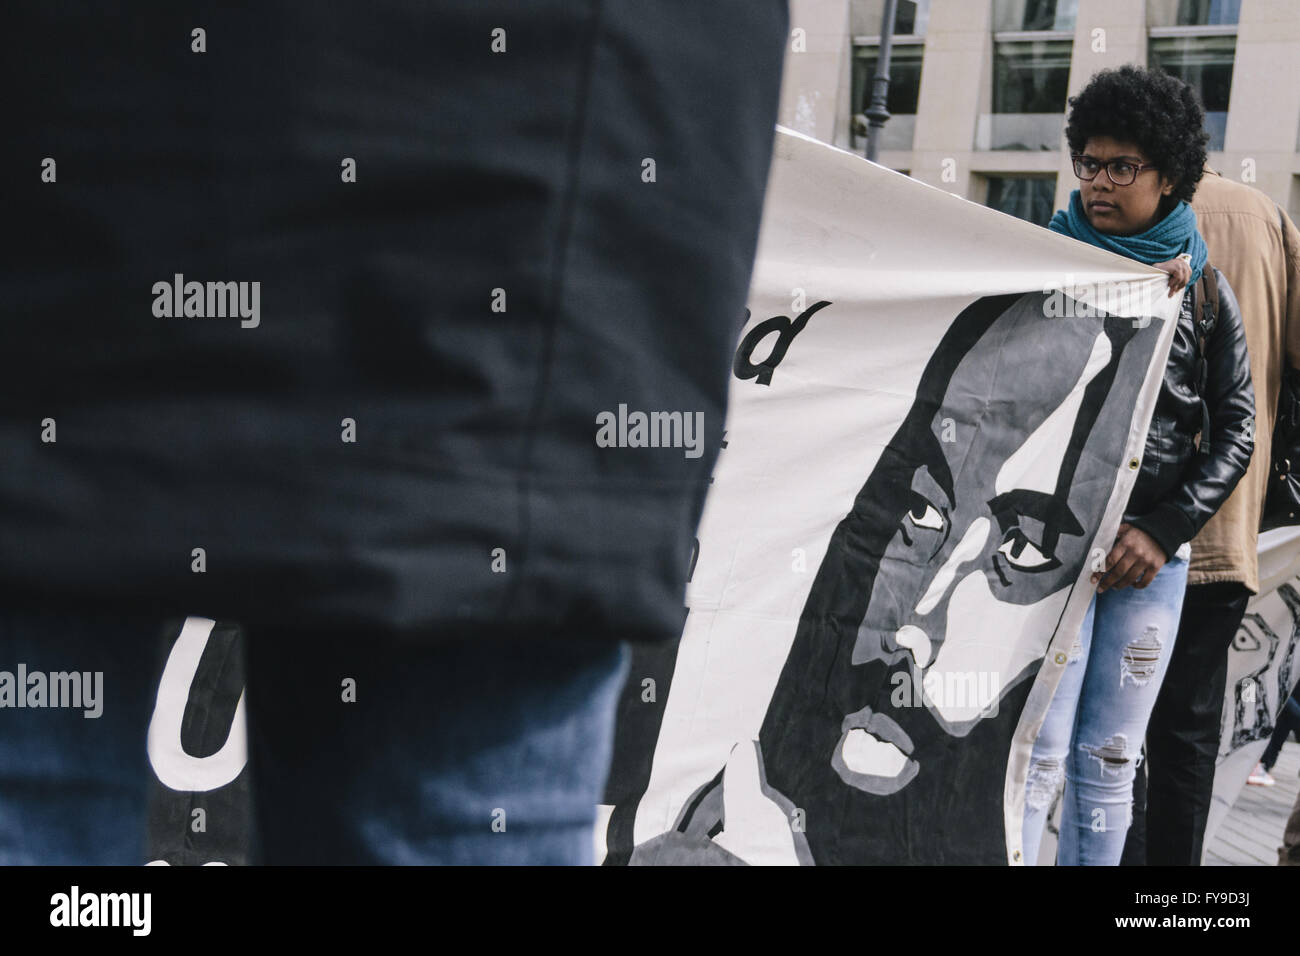 Berlin, Berlin, Allemagne. Apr 24, 2016. Les manifestants pendant le rassemblement pour la libération de Mumia Abu-Jamal et le soutien de l'affaire Black vit déplacement devant la porte de Brandebourg à côté de l'ambassade des États-Unis à Berlin sous la devise 'Libérer MUMIA - libérez-les tous". Les protestants se réunissent à l'occasion du 62ème anniversaire de Mumia Abu-Jamal, un ancien détenu à mort et Black Panther condamné en 1981 dans le meurtre de DANIEL FAULKNER agent de police de Philadelphie. La cinquième visite en Allemagne par le président américain Barack Obama à Hanovre commence aussi le 24 avril 2016. (Crédit Image : © Jan Scheunert vi Banque D'Images